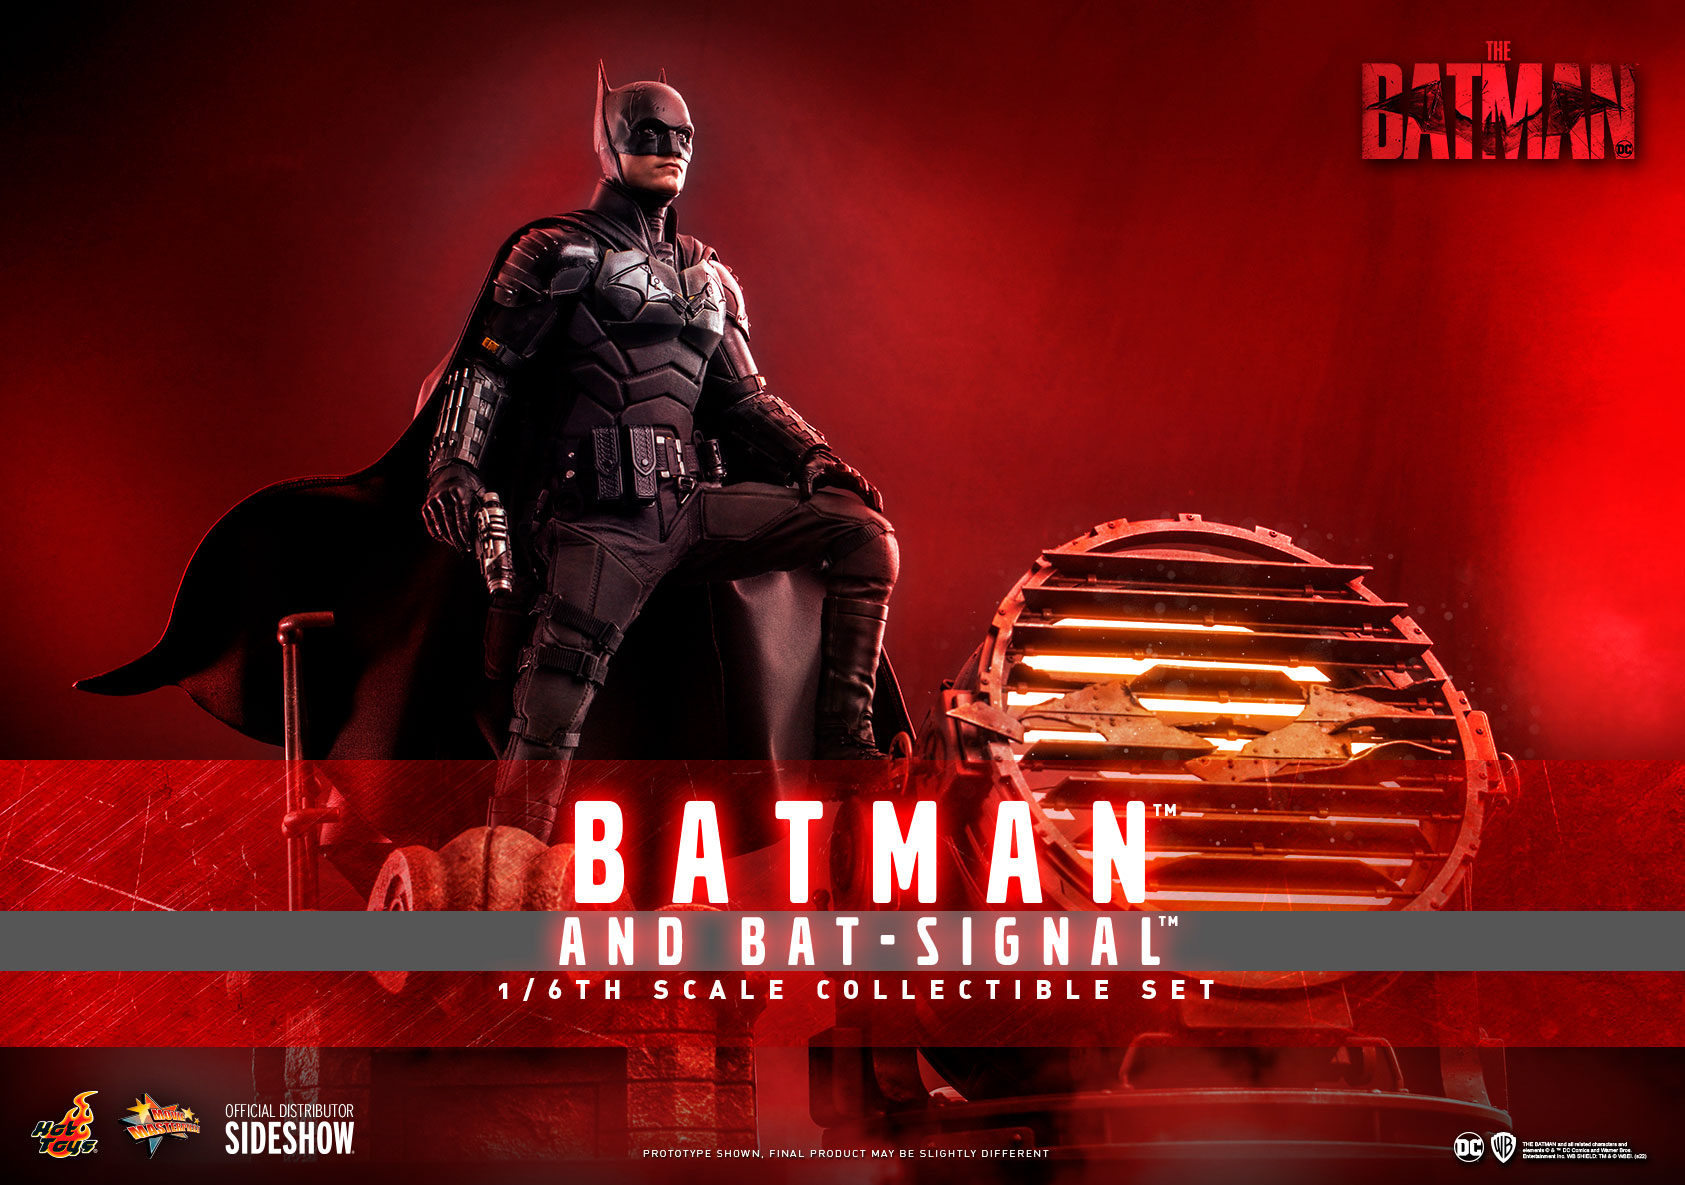 batman-and-bat-signal_dc-comics_gallery_622253a207f6d.jpg